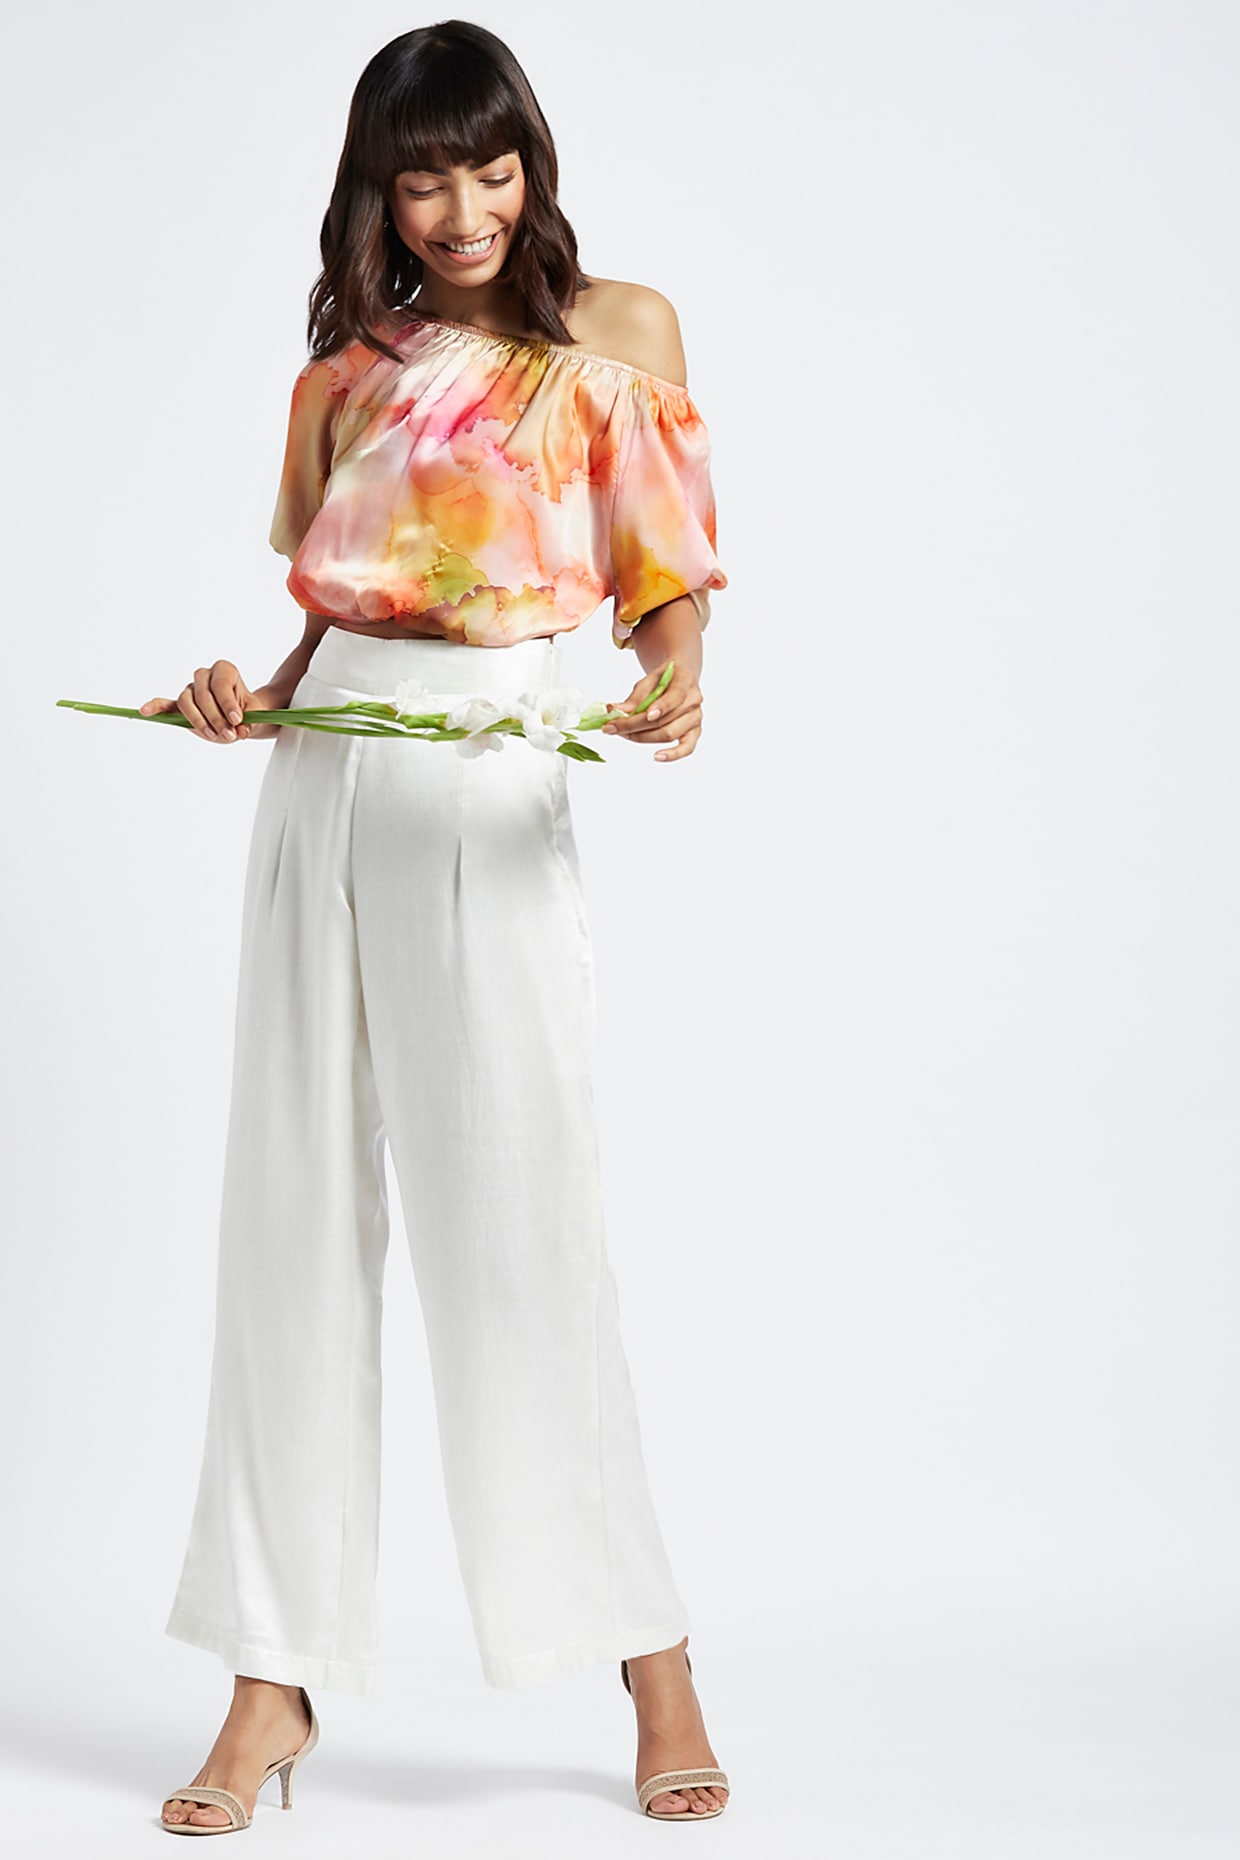 Buy White Pants for Women by De Moza Online  Ajiocom